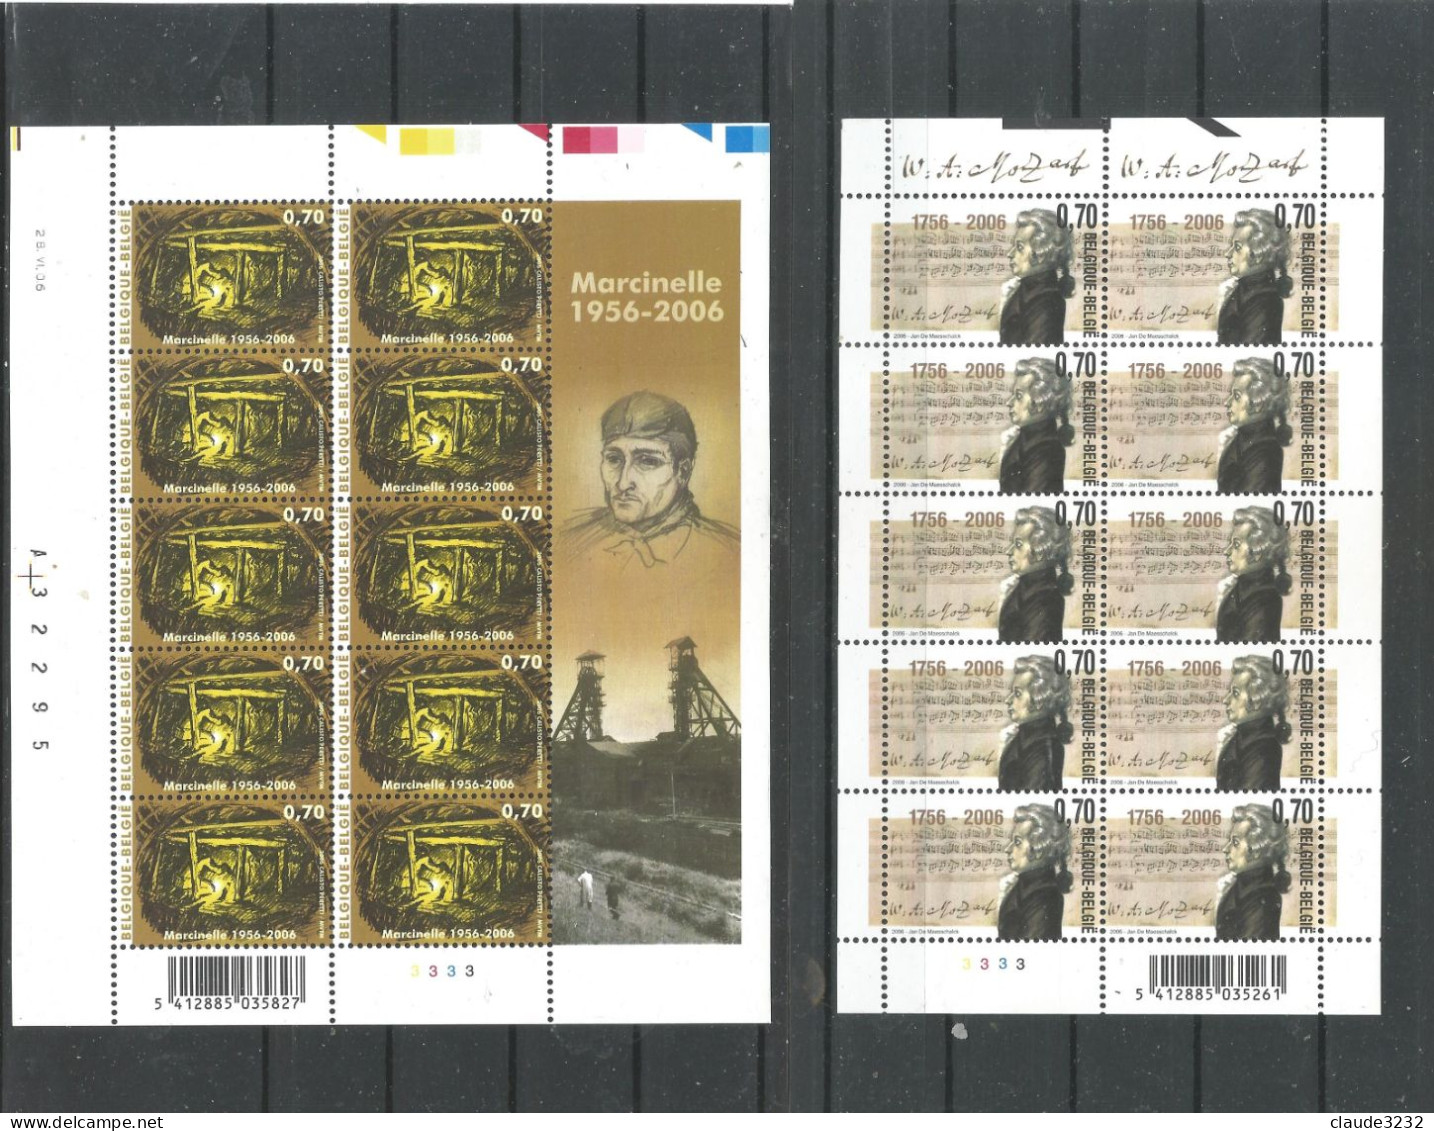 4.Belgique : timbres neufs**